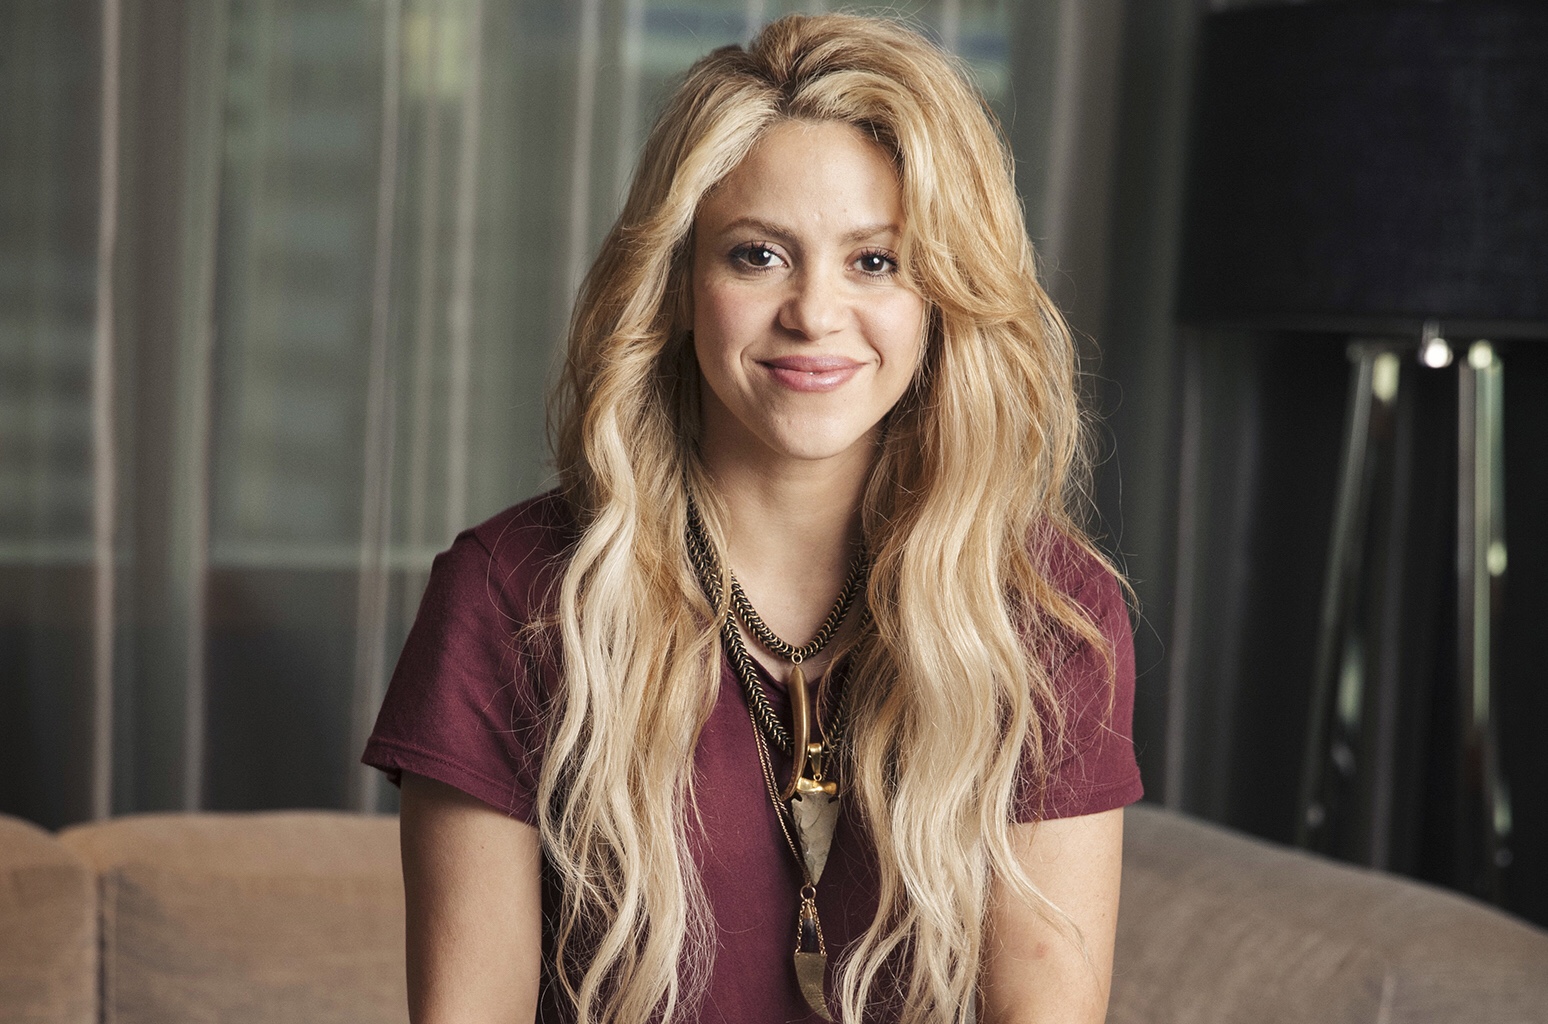 El escandaloso nuevo “look” de Shakira: ¿Qué hay detrás del cambio de imagen? (FOTO)